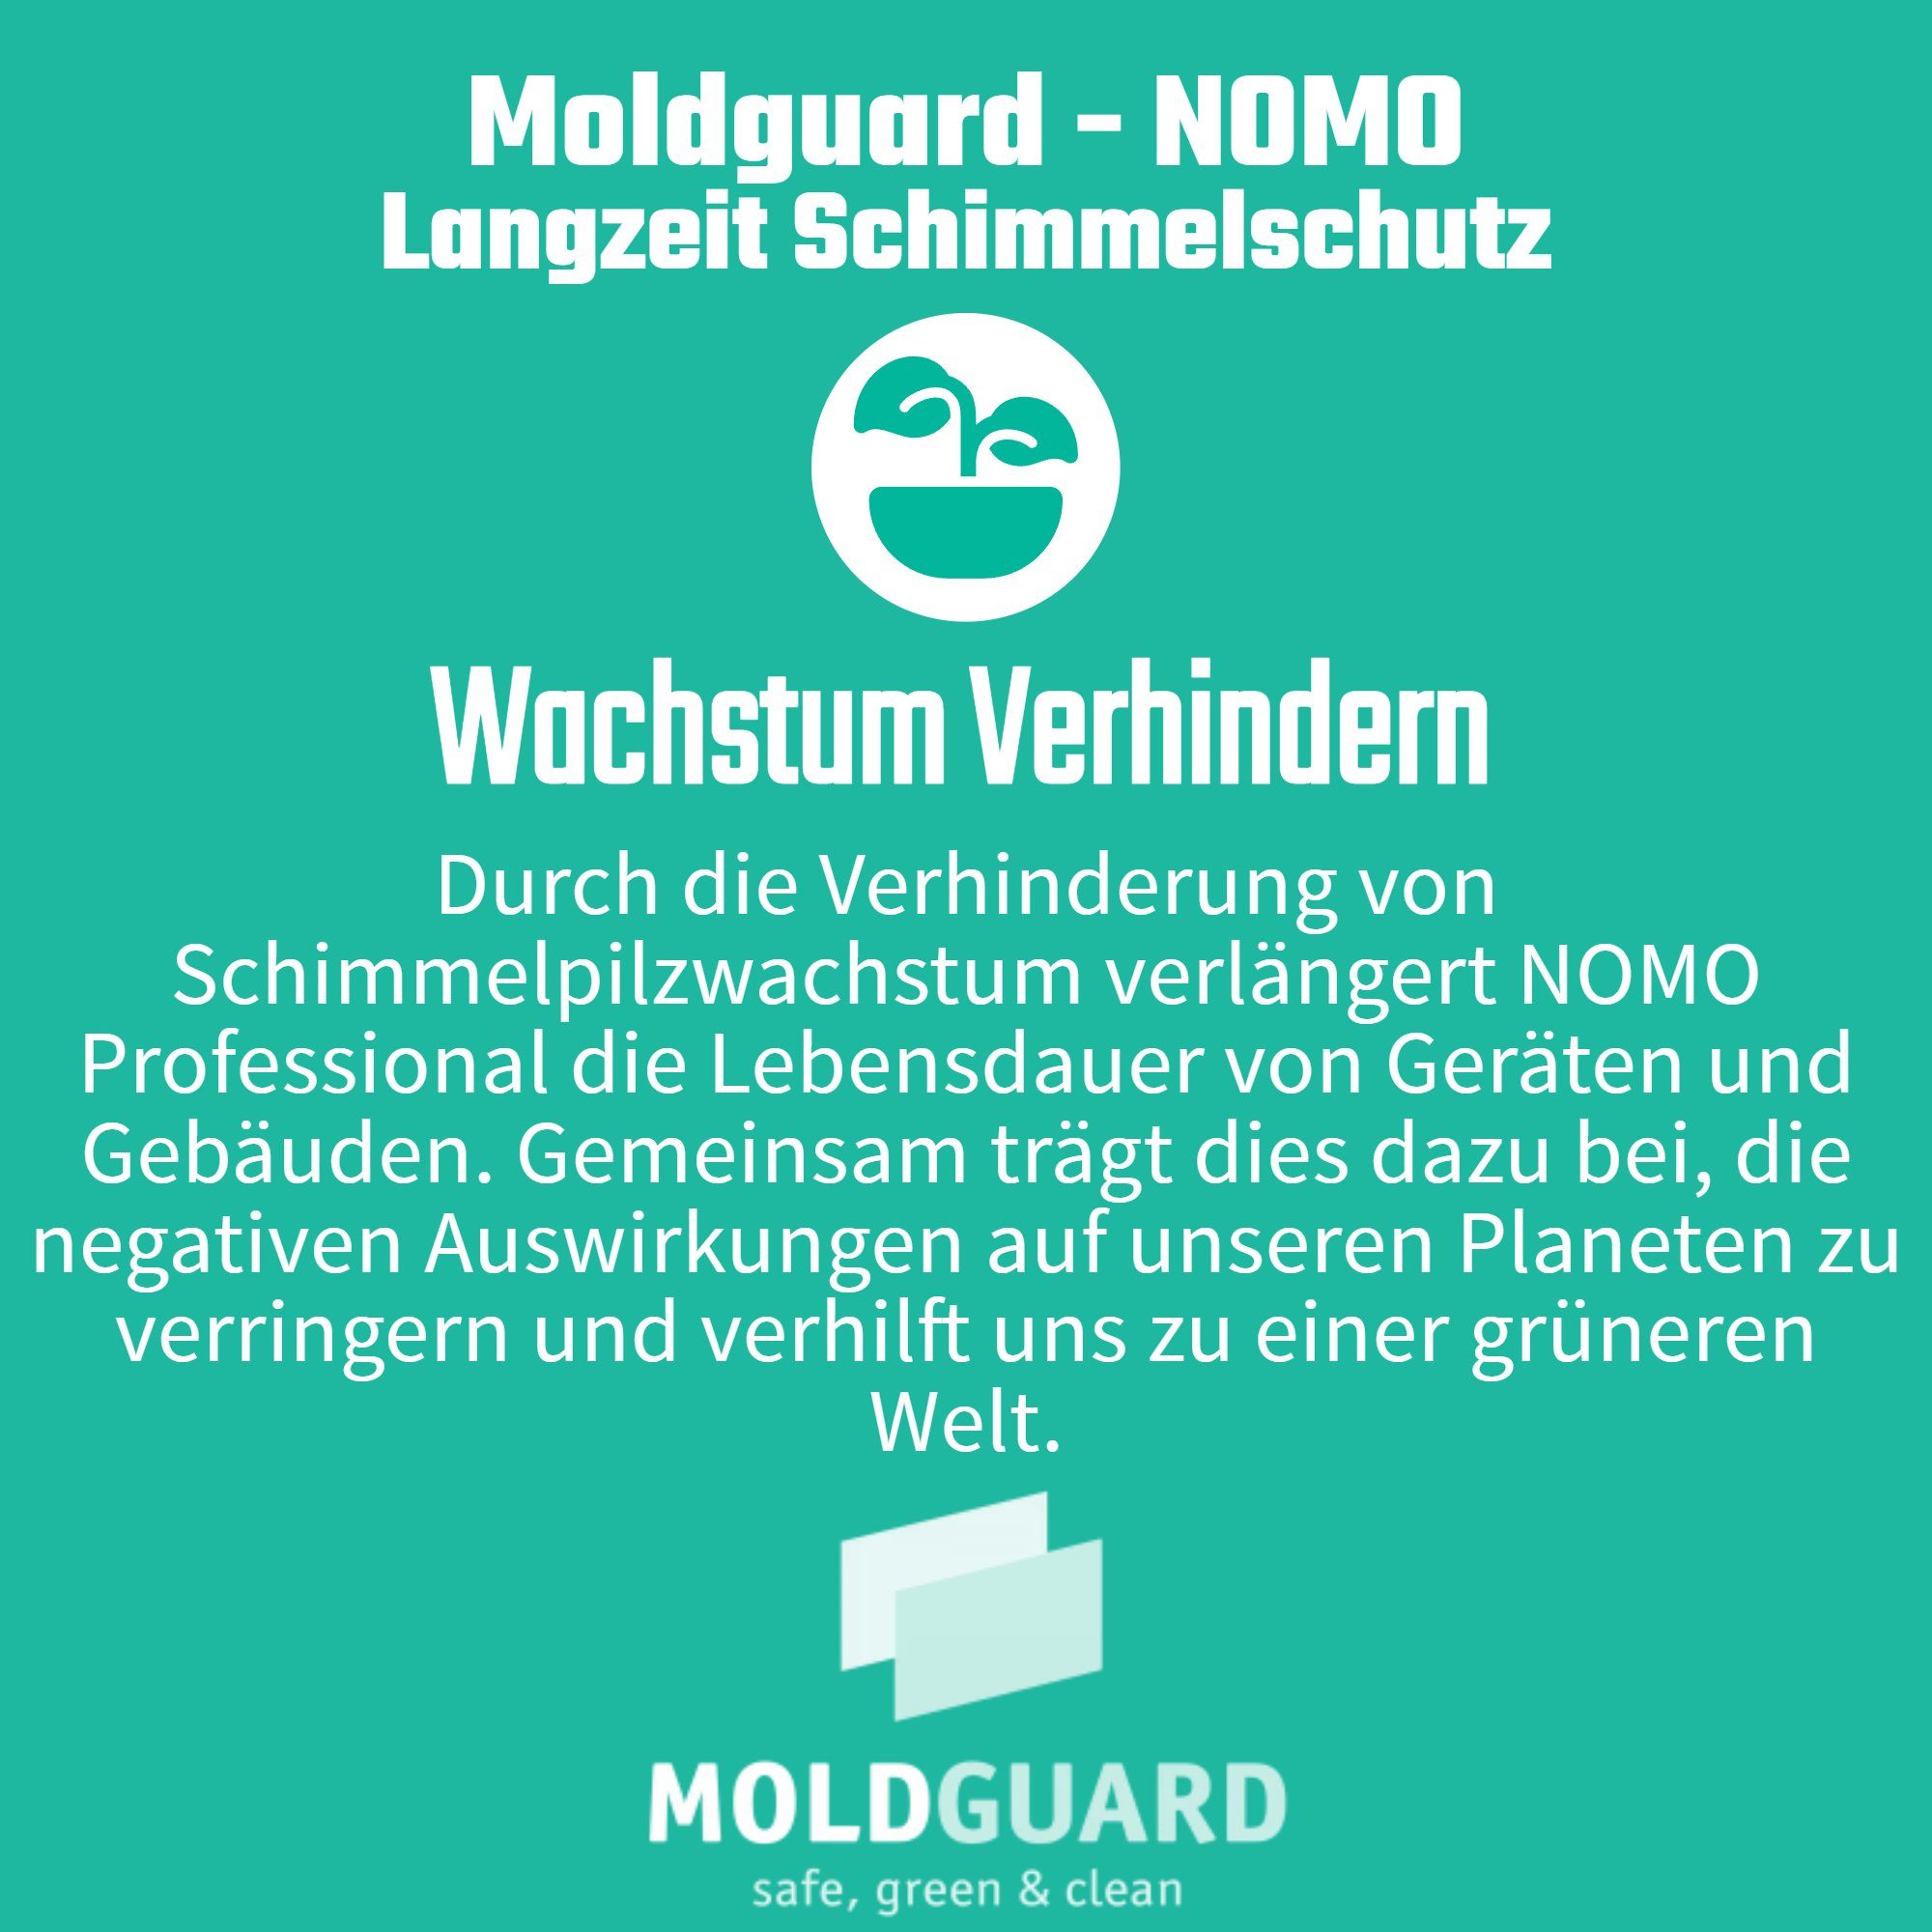 Moldguard (Rein natürliche Inhaltsstoffe) Schimmelentferner NOMO